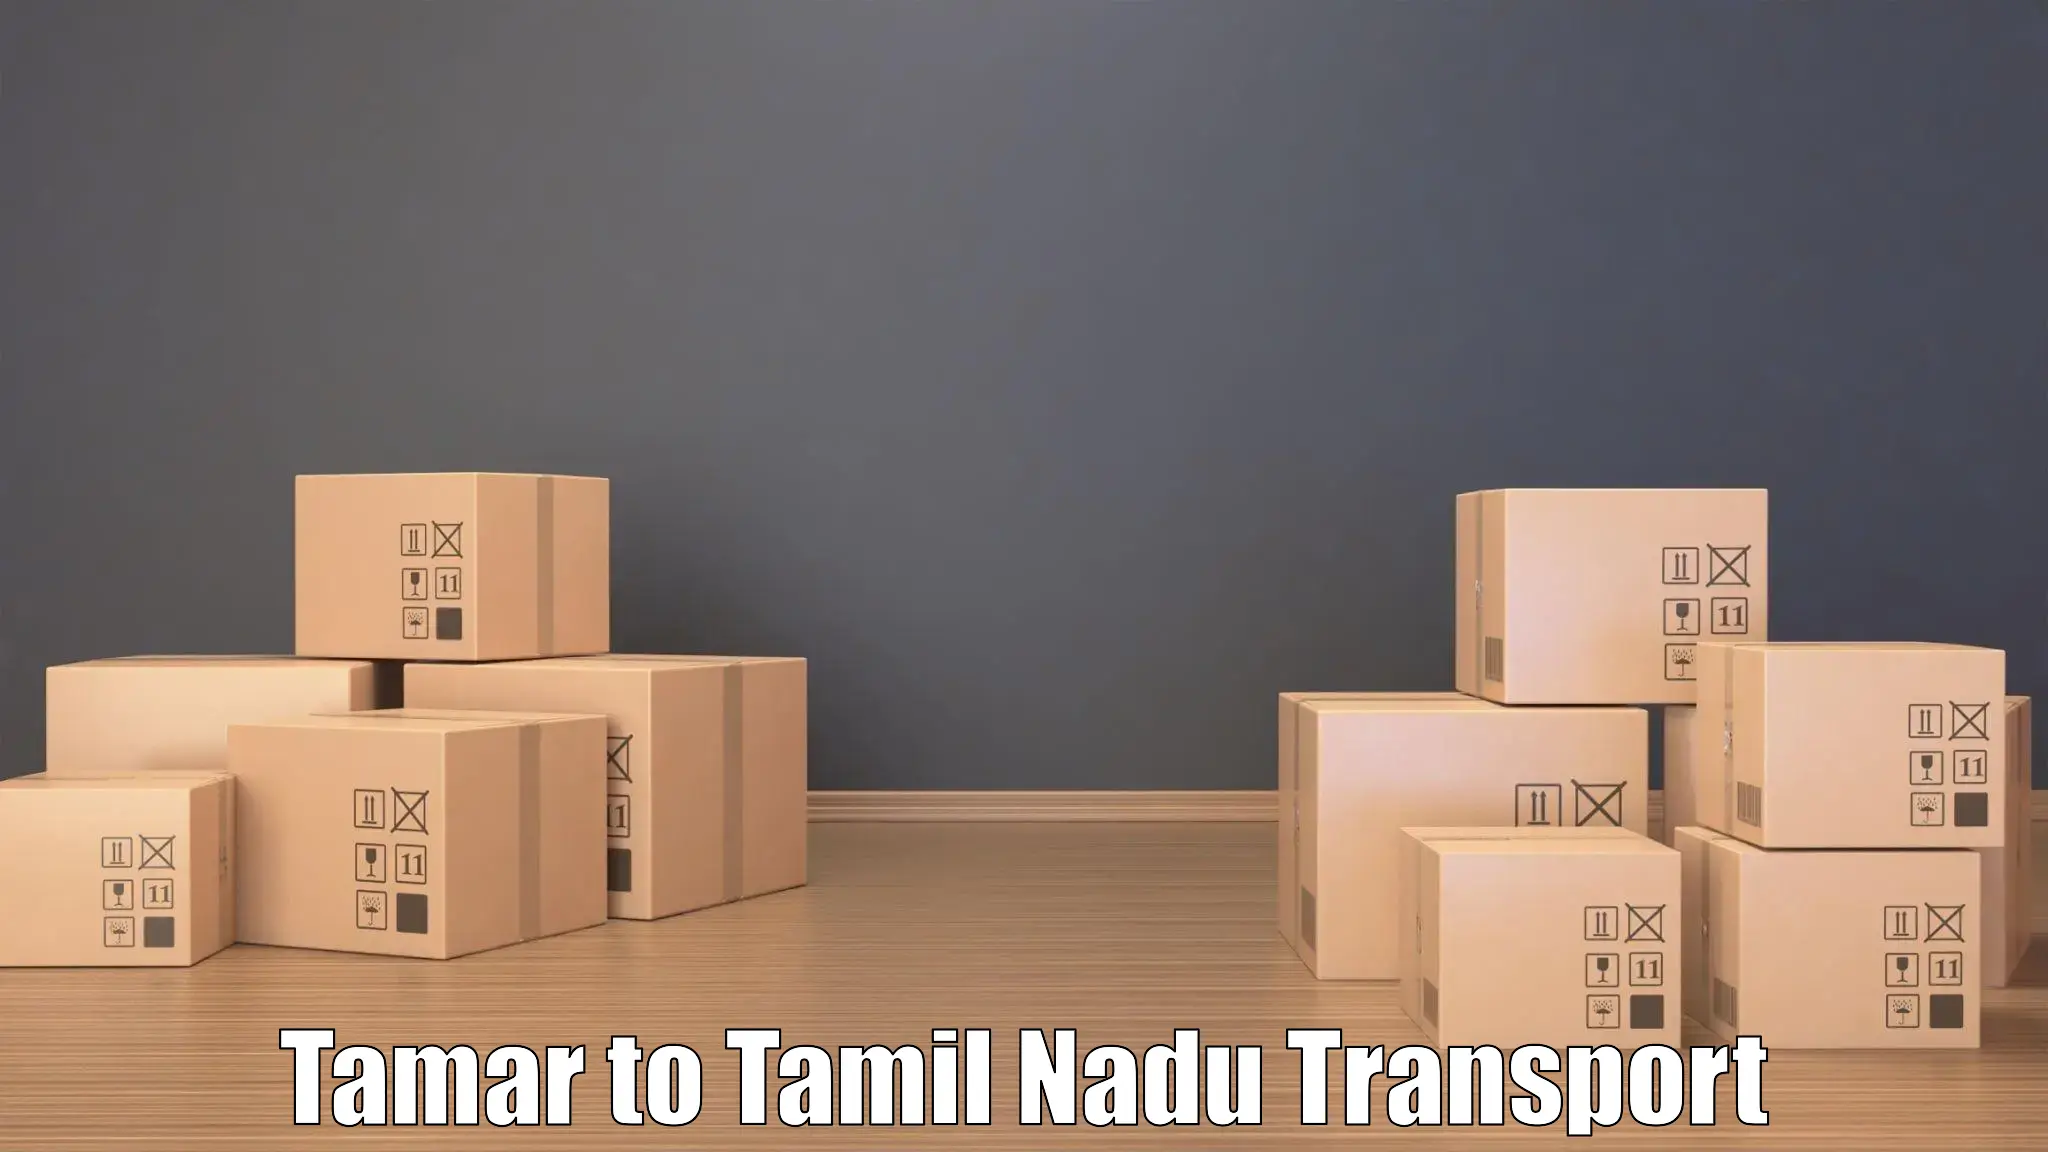 Land transport services Tamar to Kulittalai